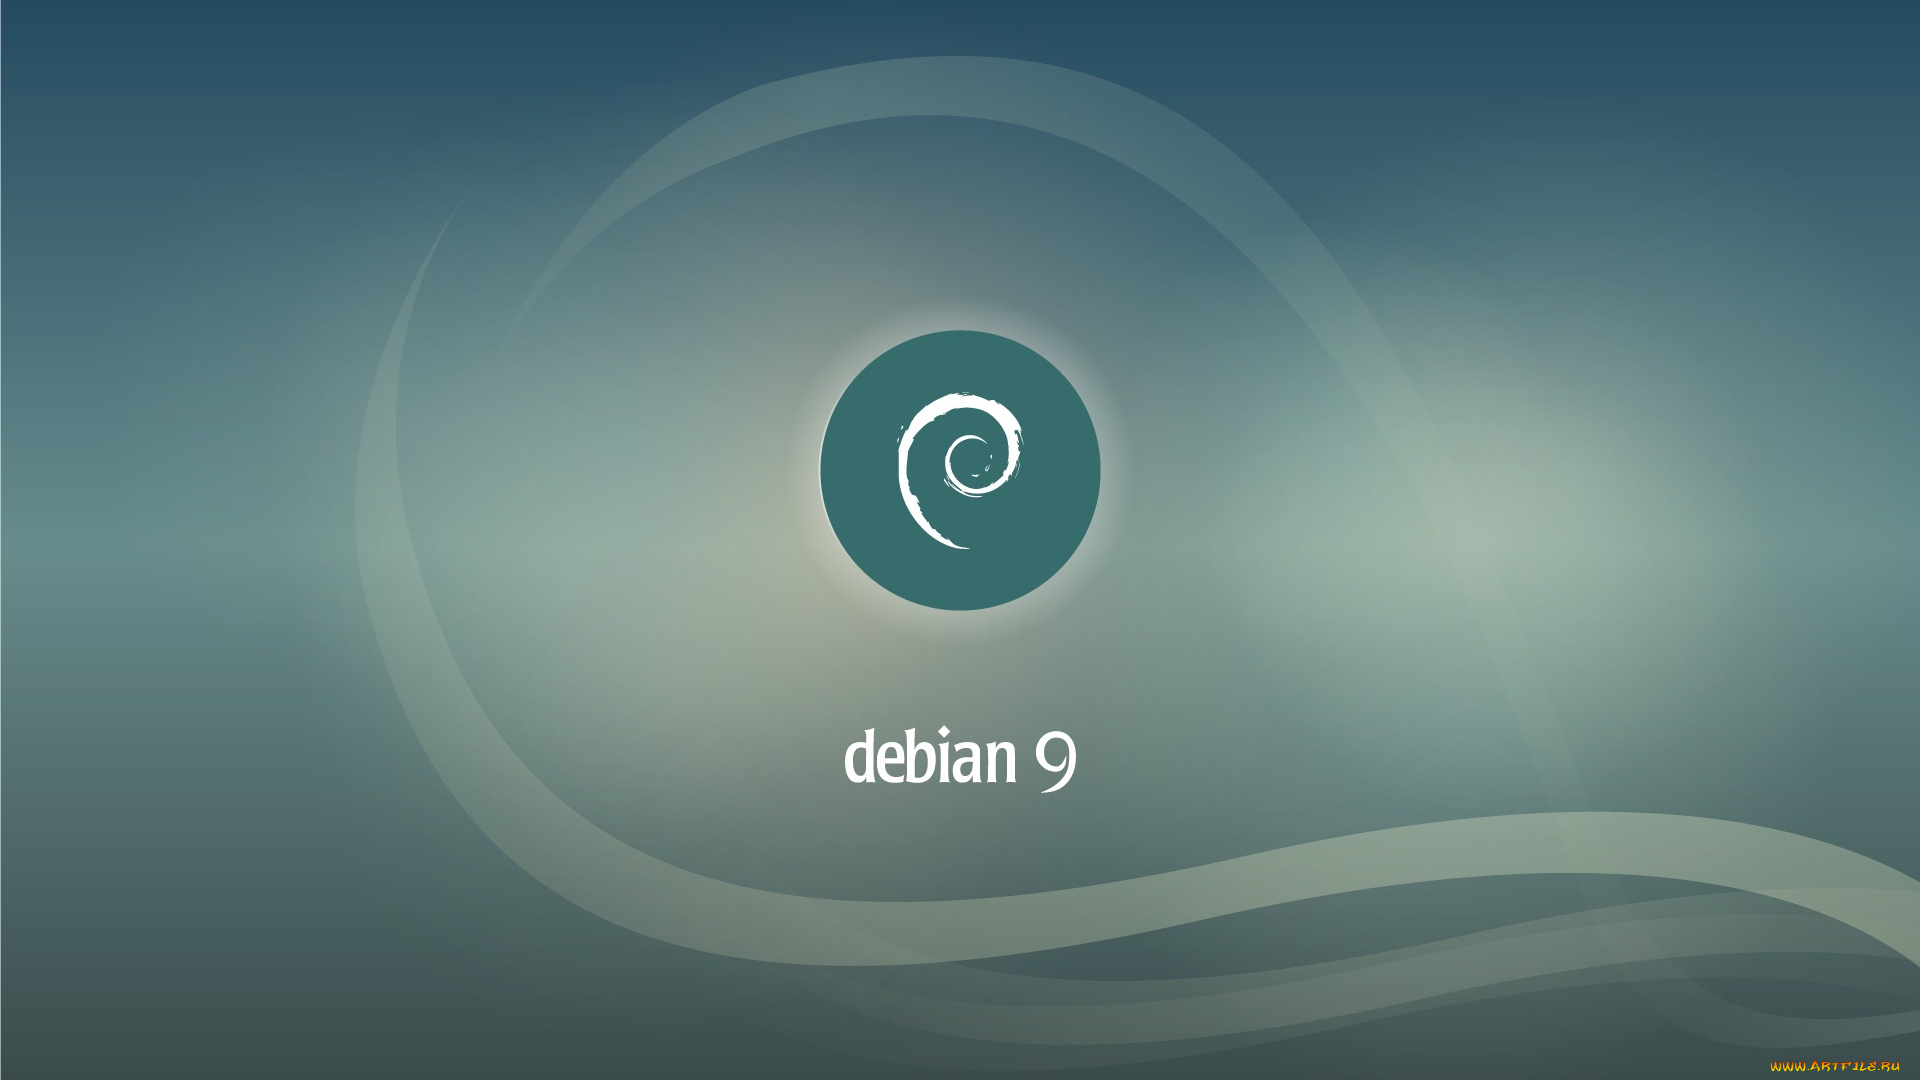 Https debian org. Debian. Линукс дебиан. Debian 9. Linux Debian 9.